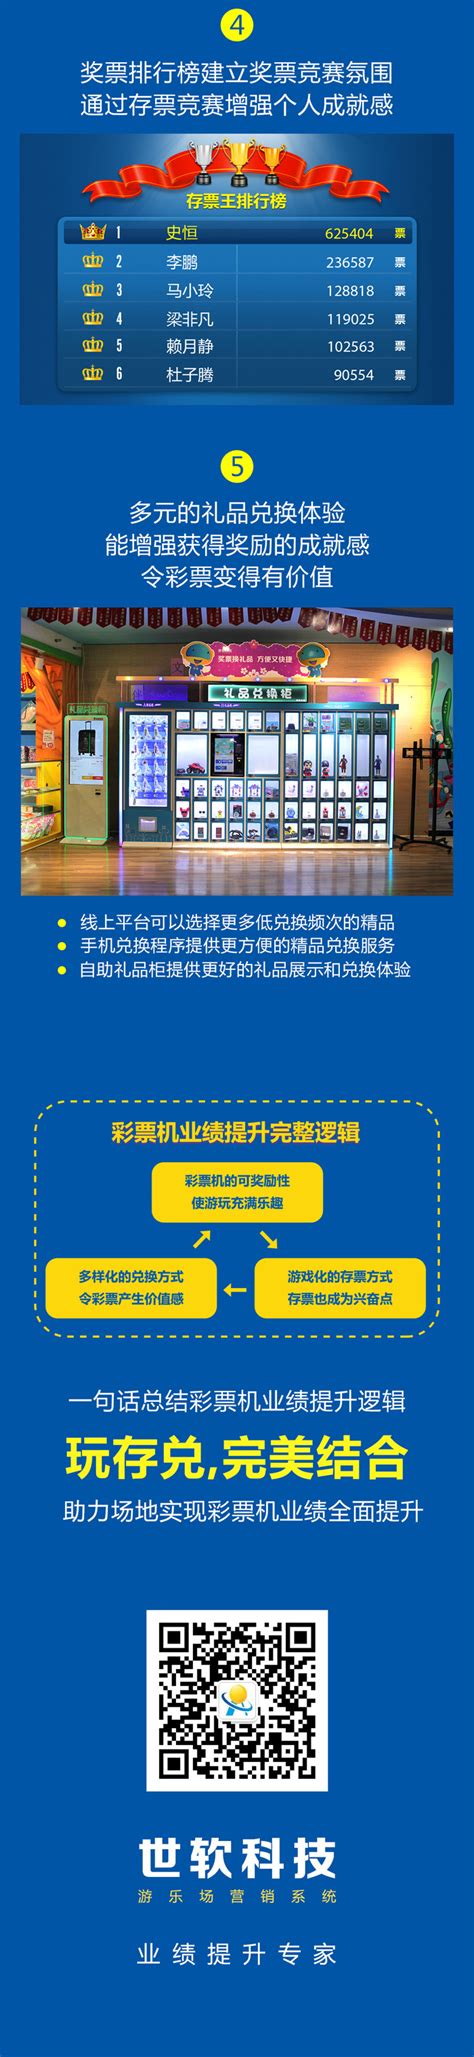 2022年海南省体育彩票销售数据公告-海南体彩网